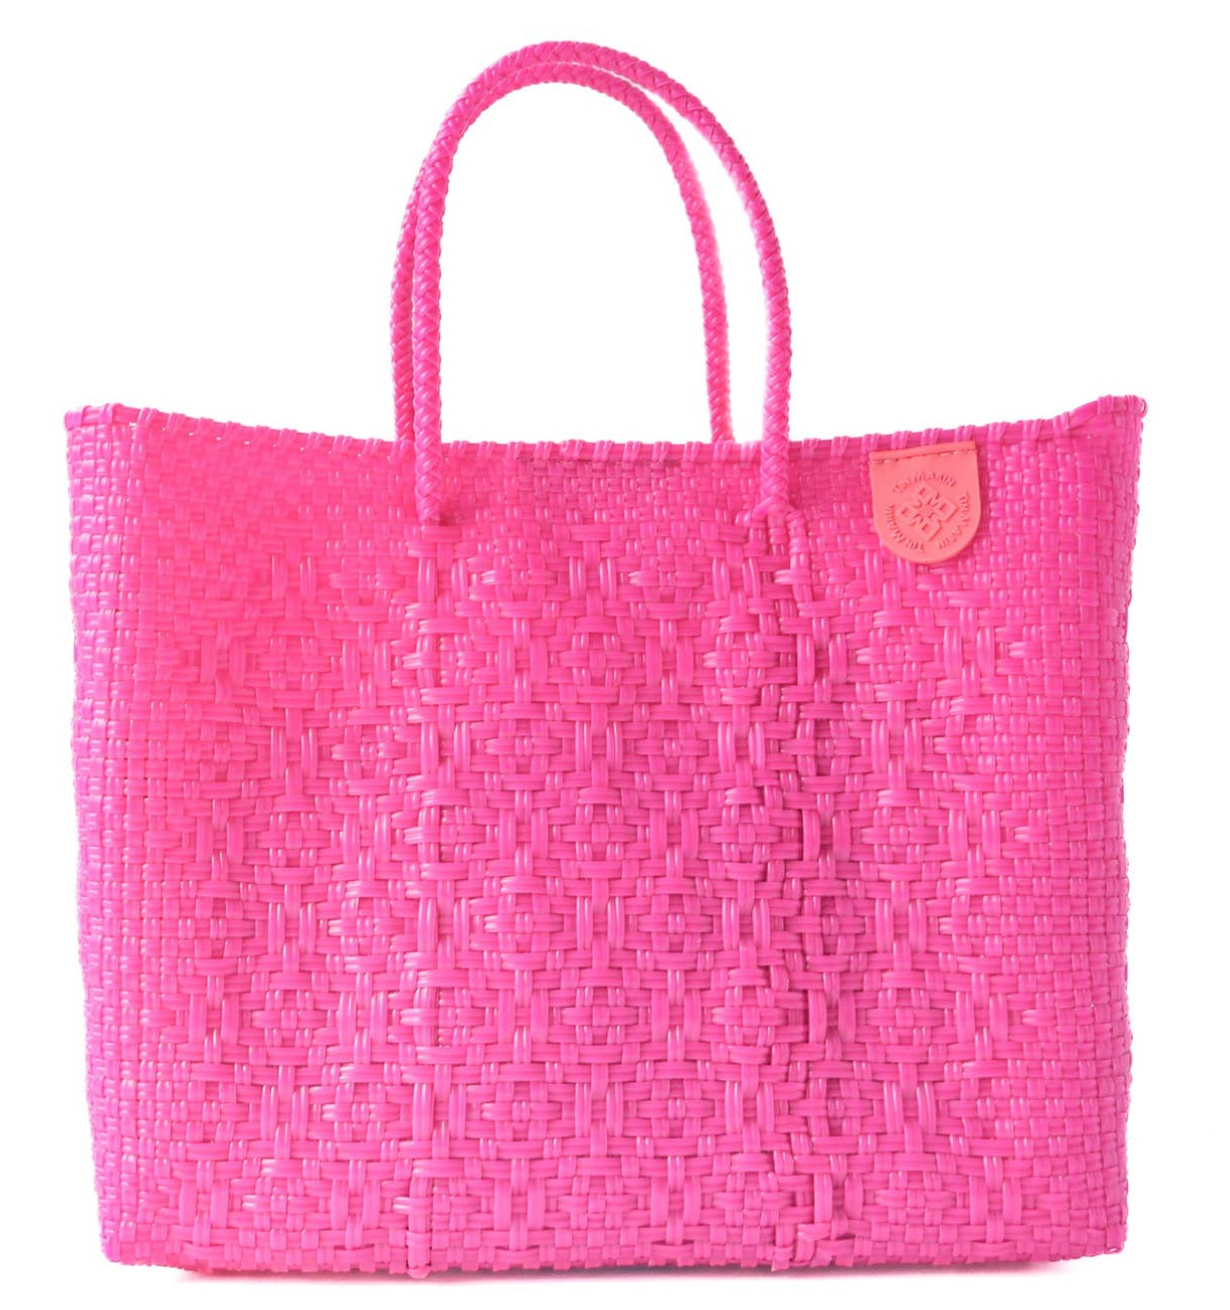 hot pink tote bag